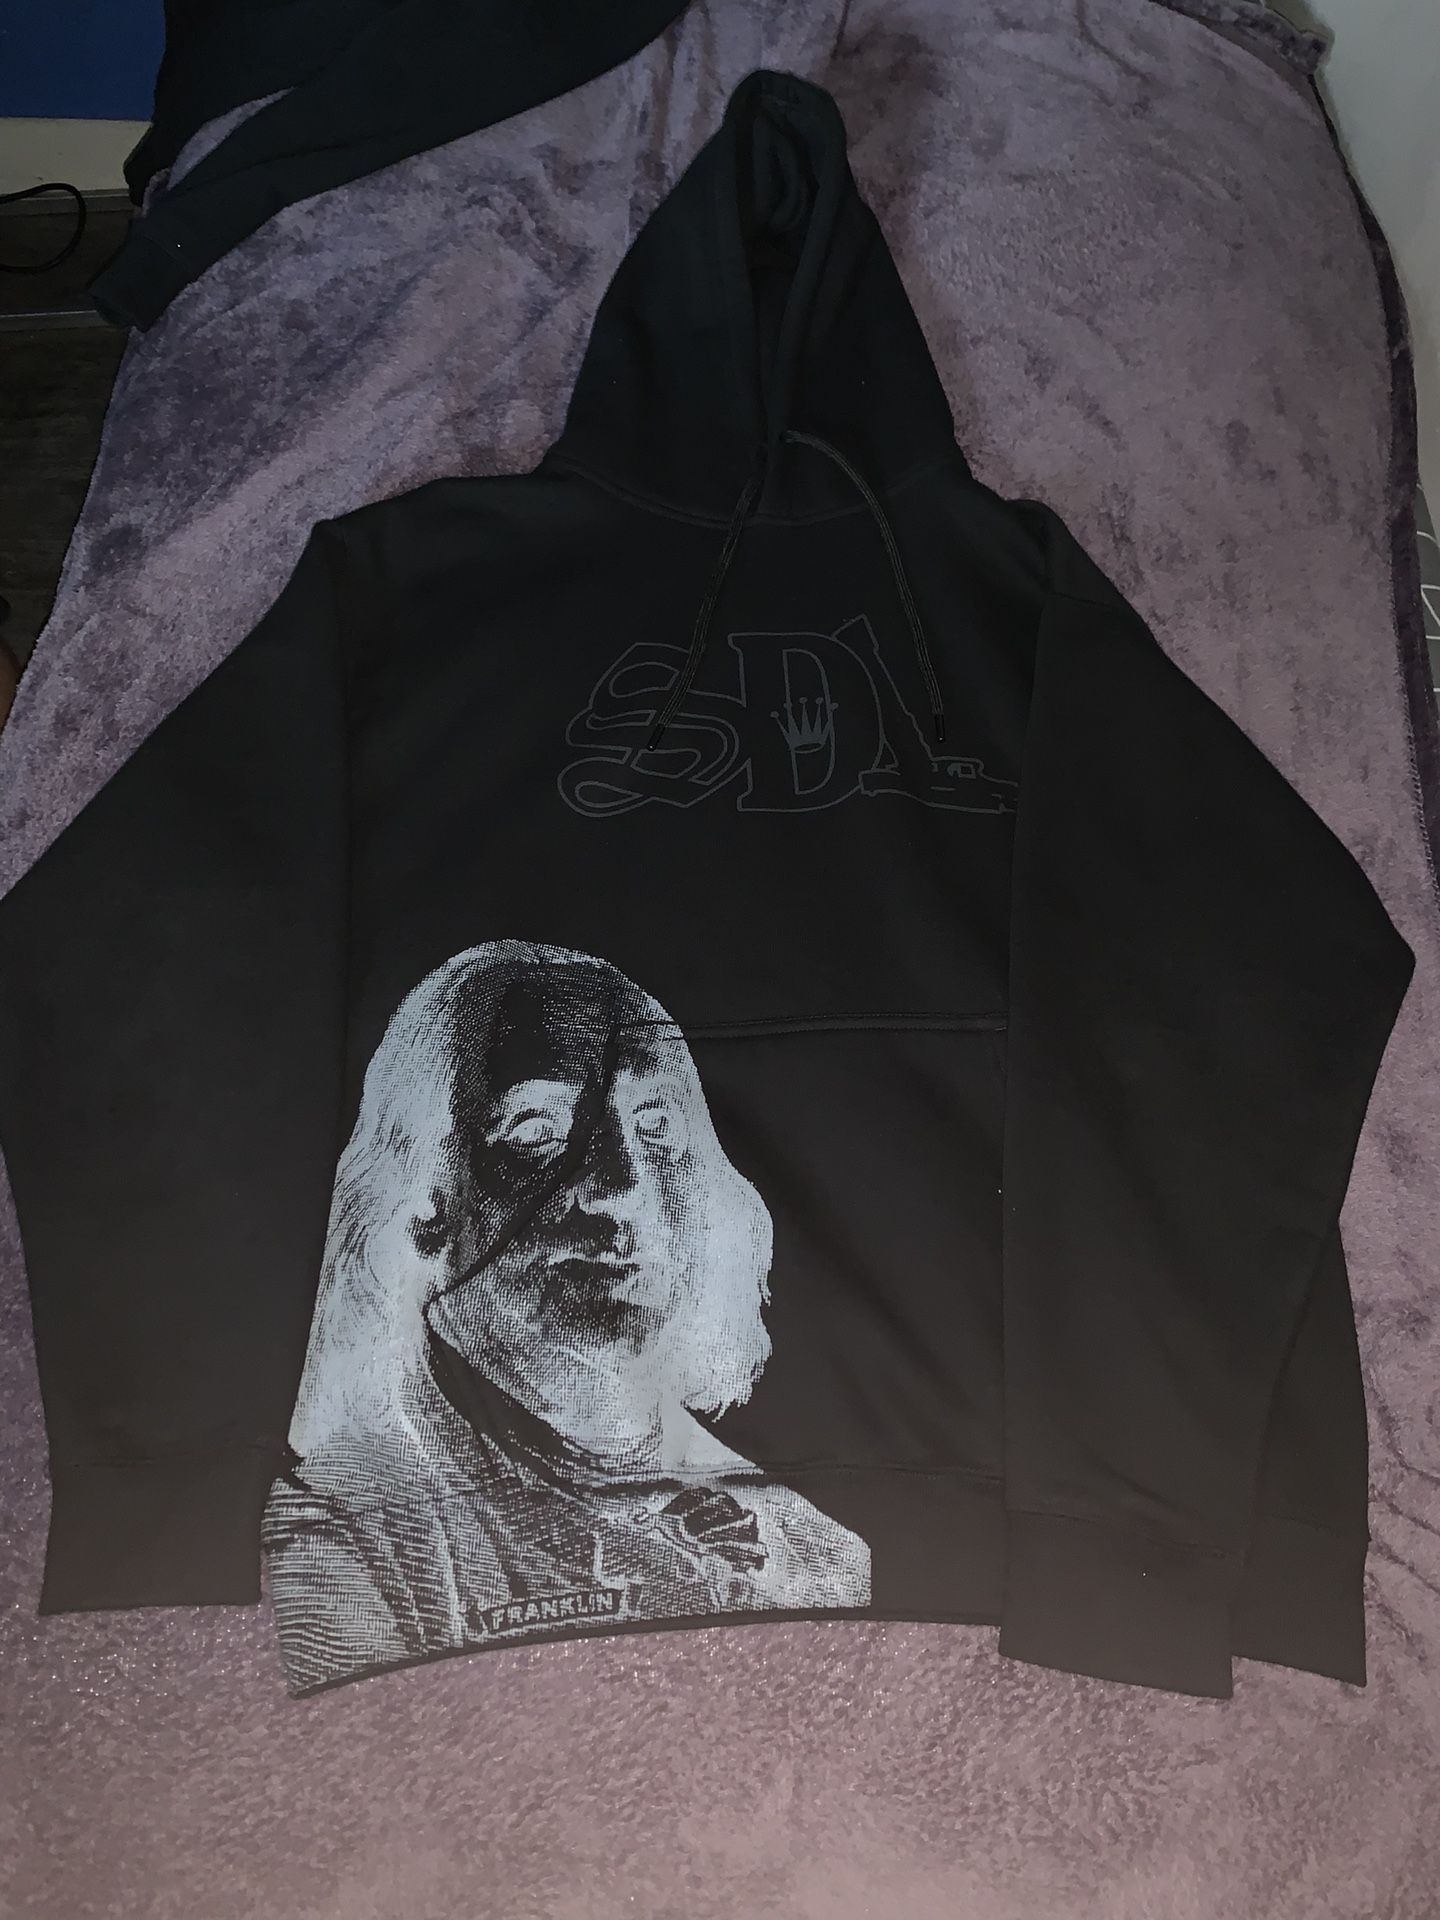 SDL hoodie